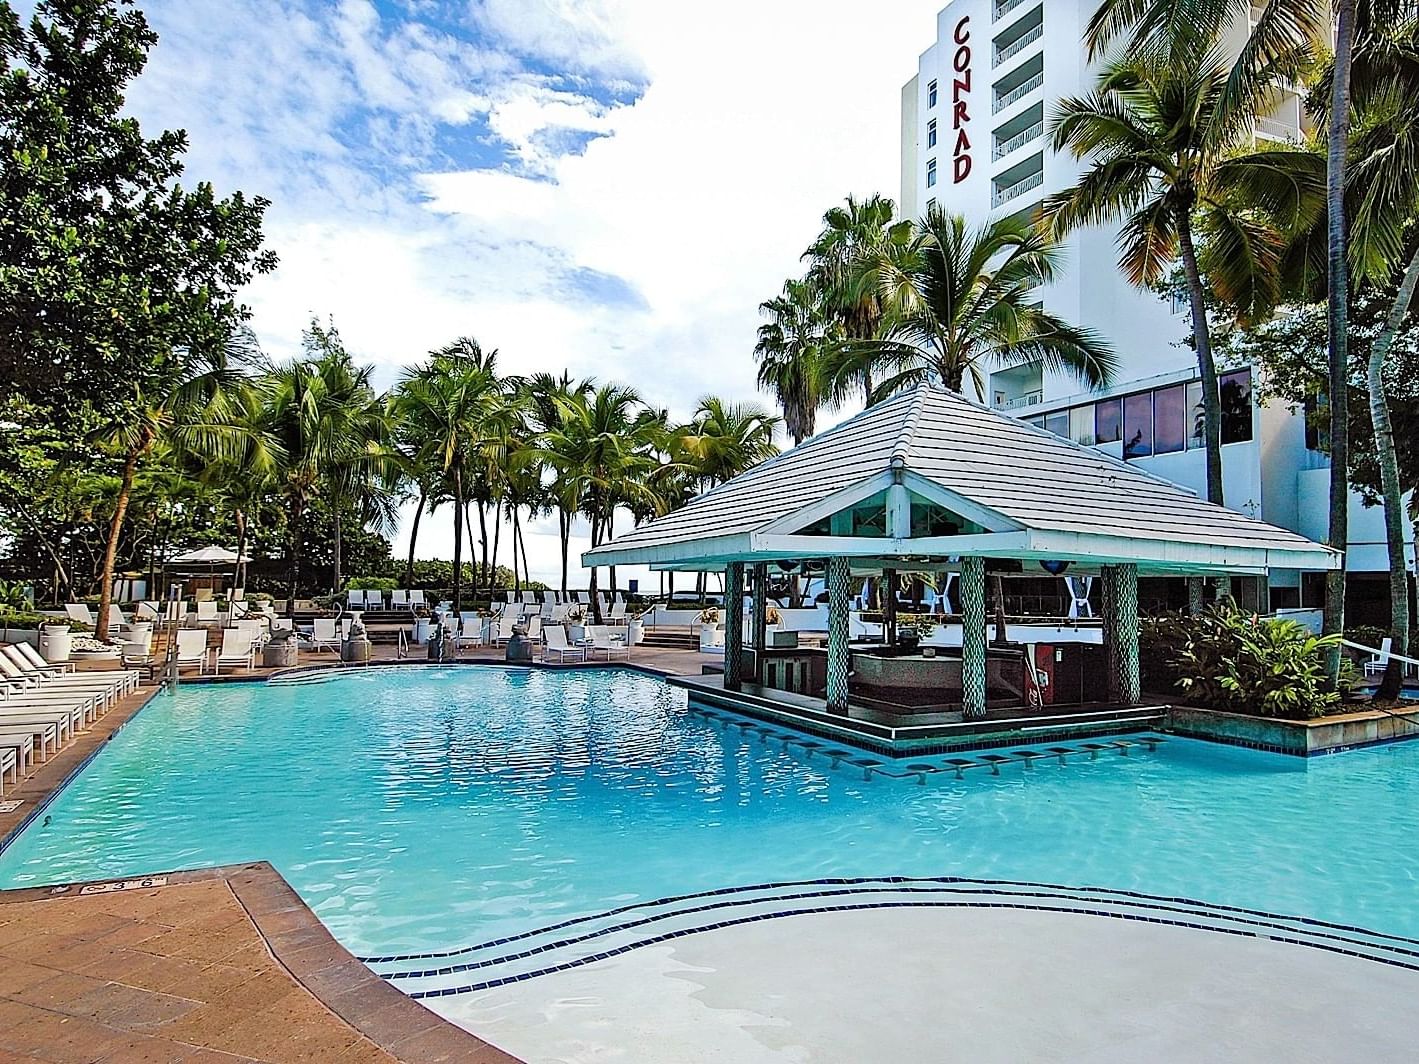 Exterior view of Aqua Bar at The Condado Plaza Hilton